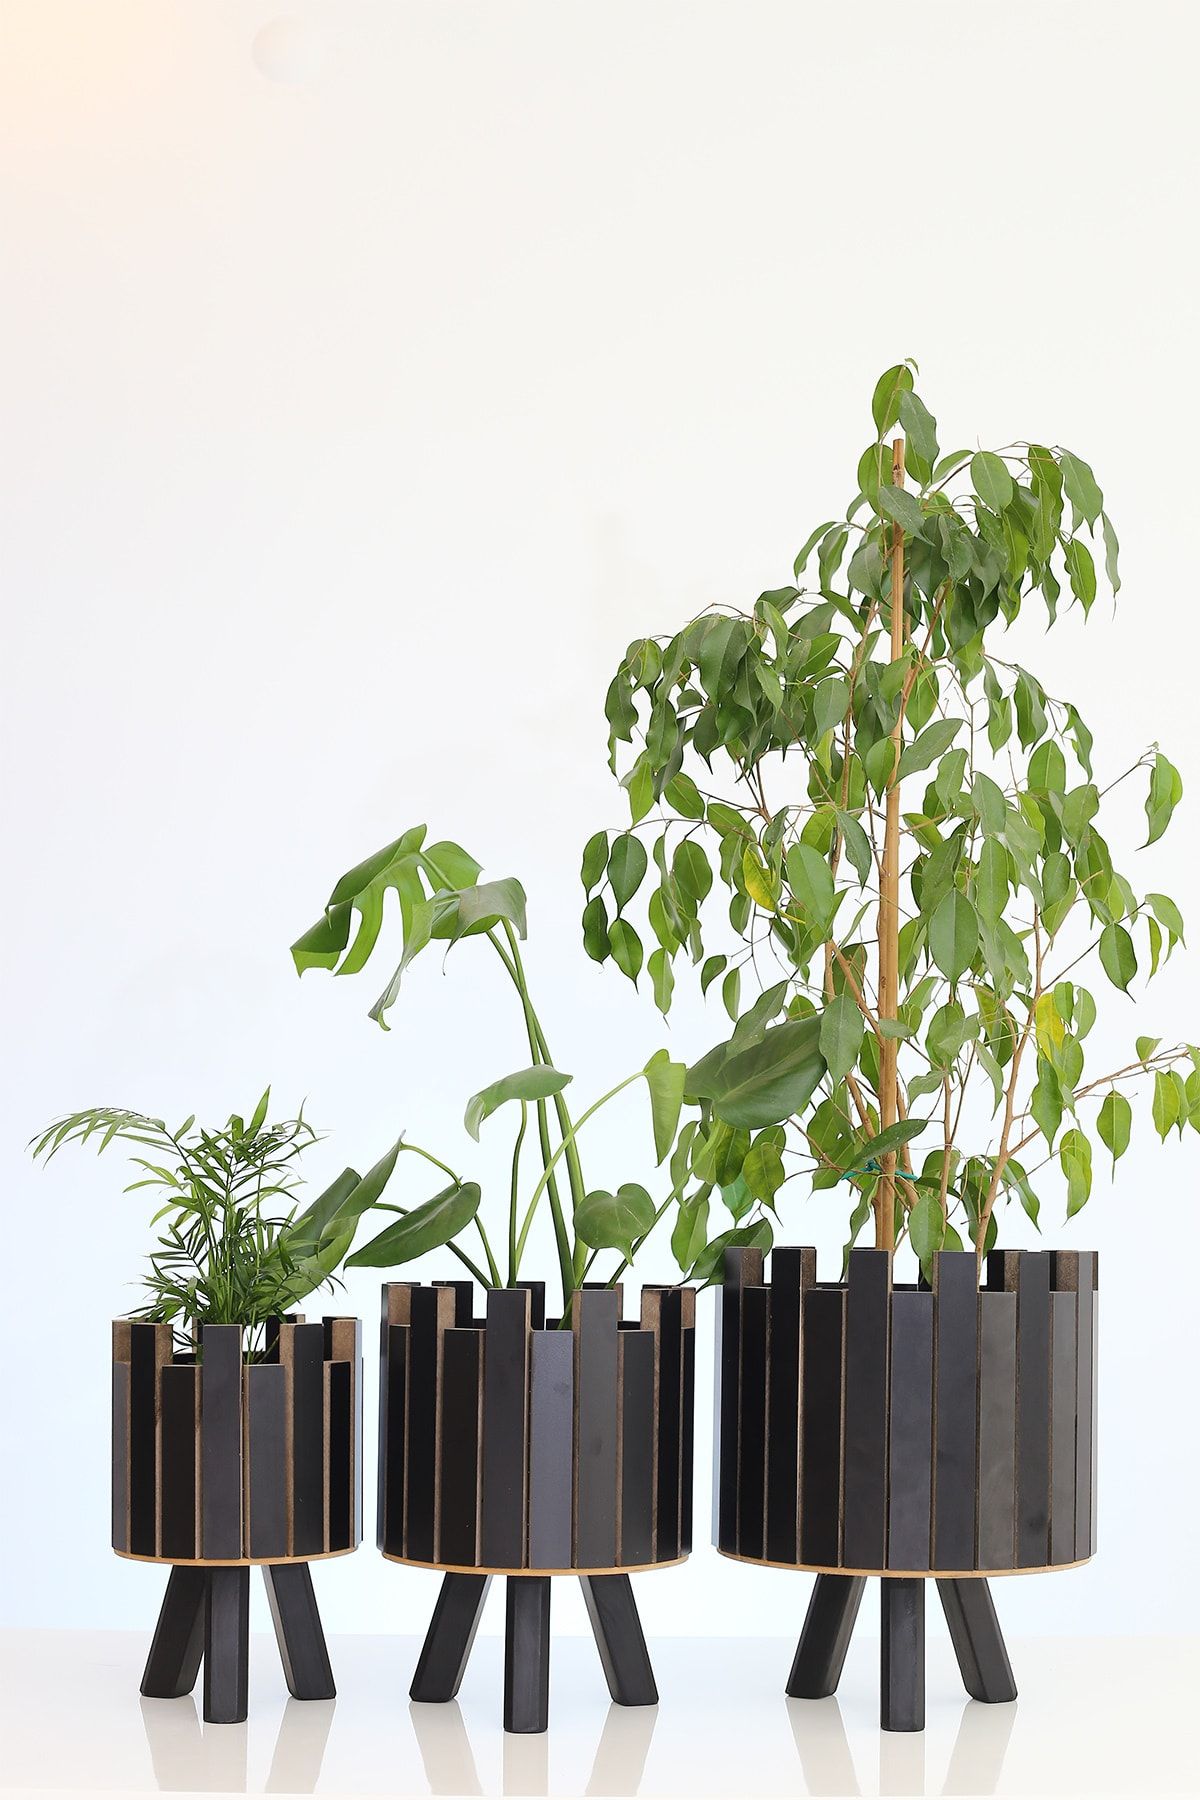 Hakan Mobilya Siyah Renk Siyah Ayaklı 3'lü Kale Model Saksı Standı Seti Dekoratif Çiçeklik Bahçe Ahşap Saksılık